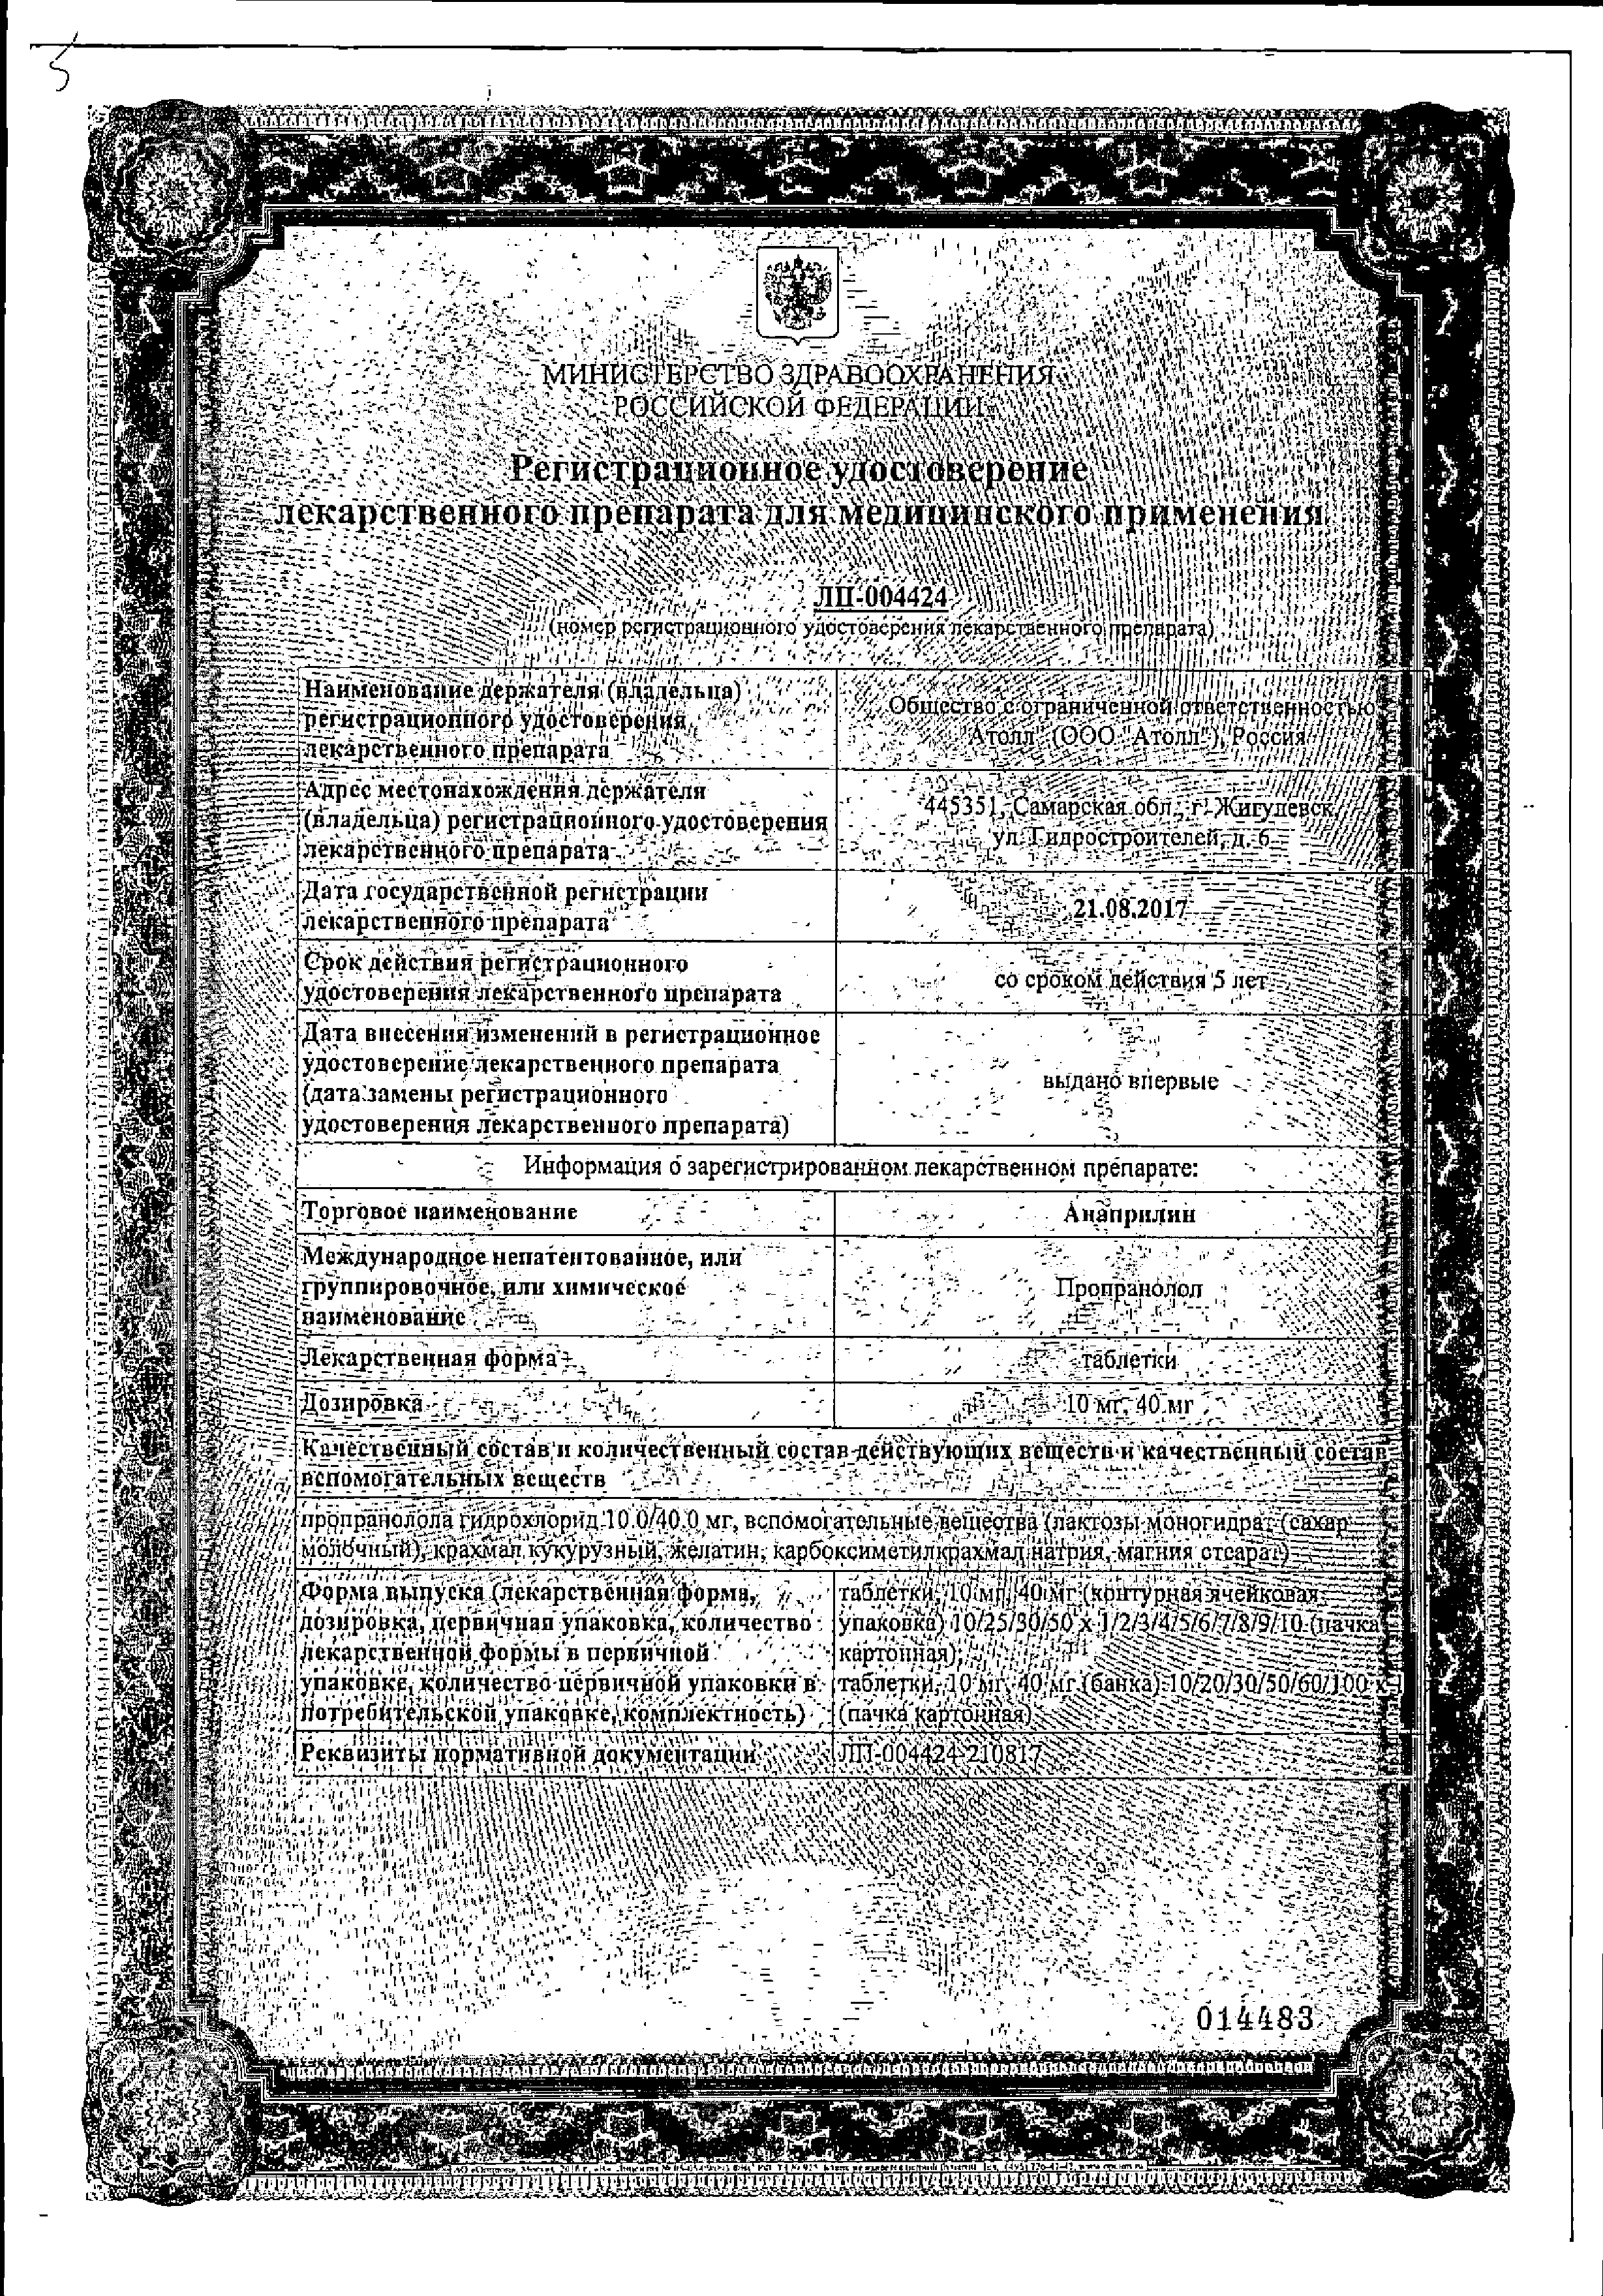 Анаприлин сертификат